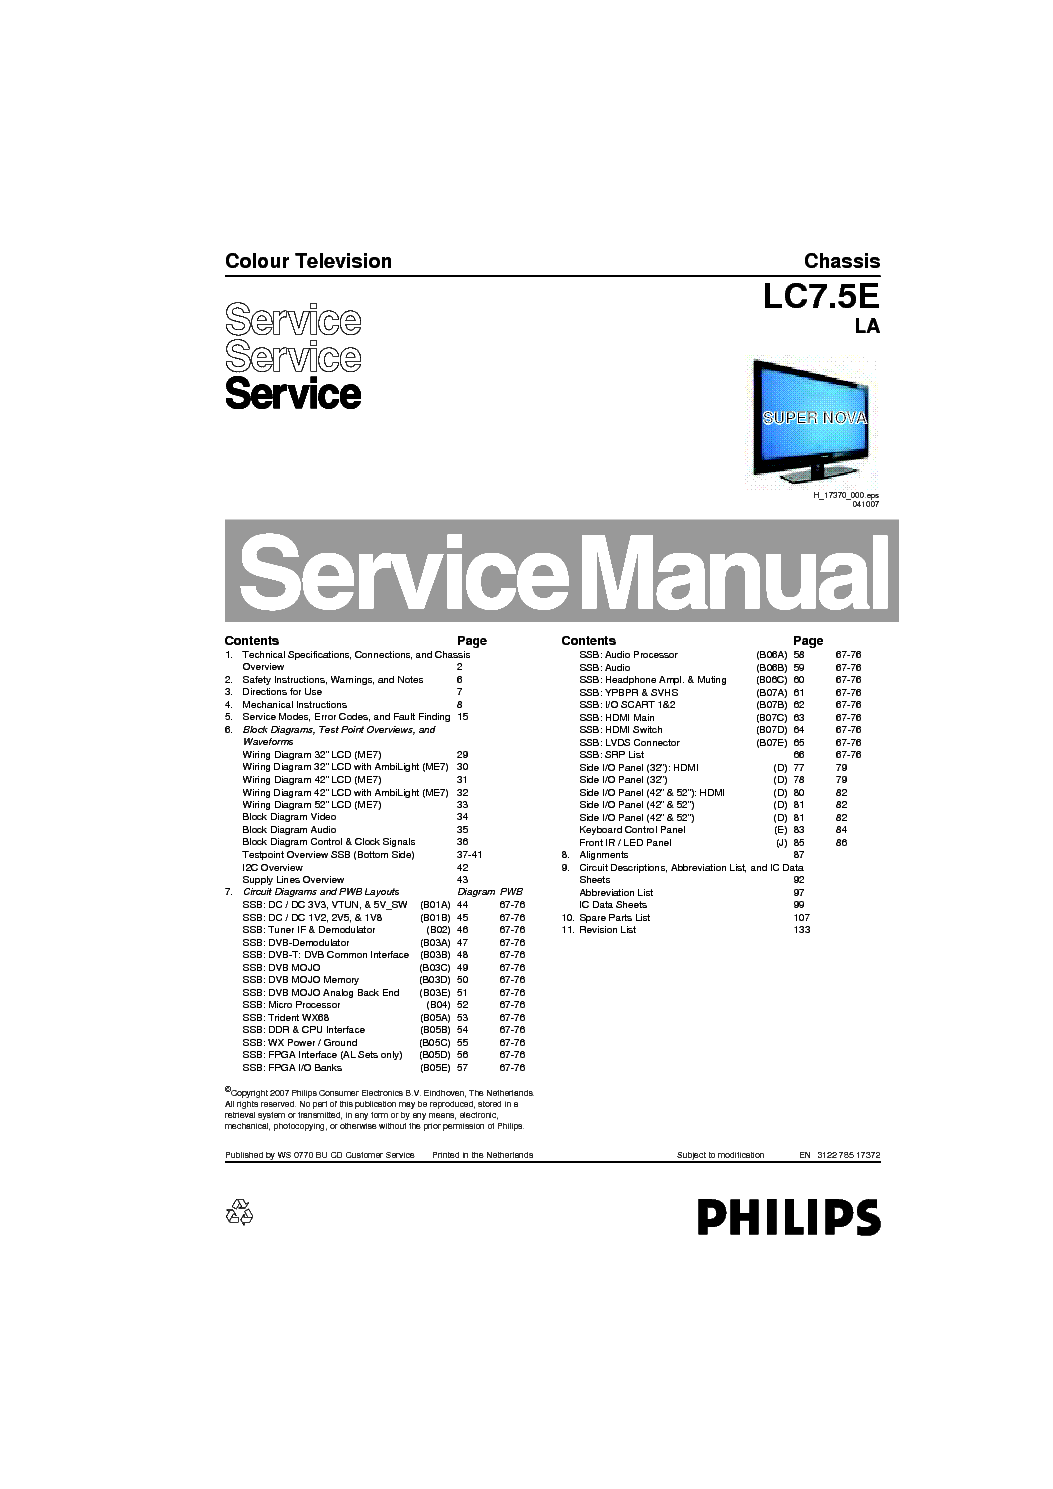 PHILIPS 42PFL7762 LCD CH LC7.5E LA service manual (1st page)